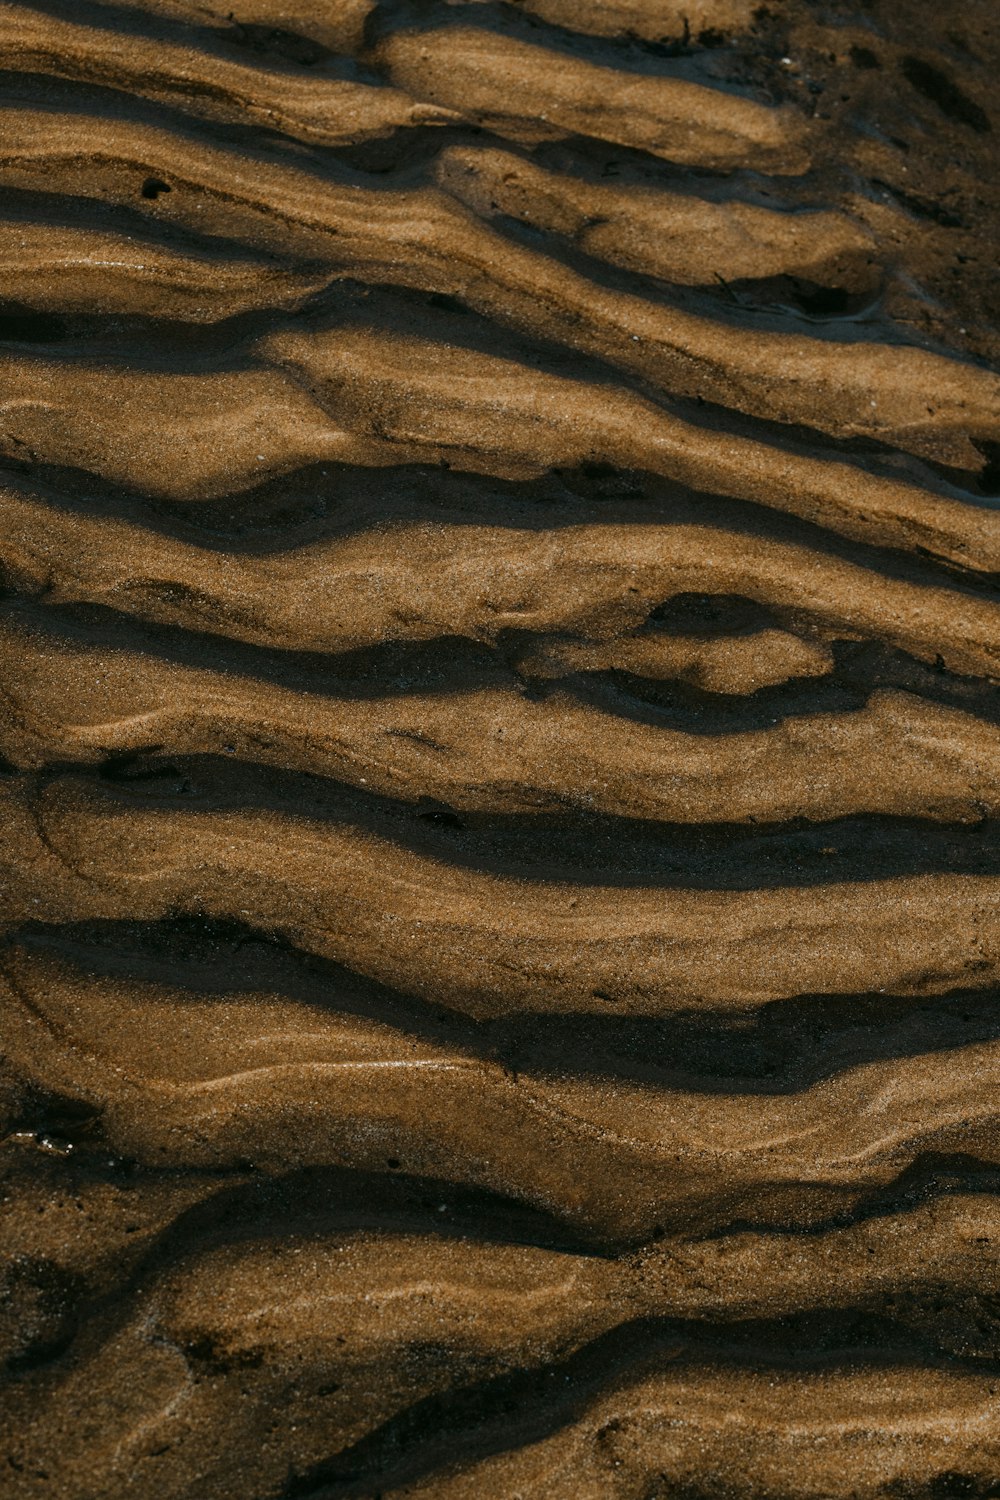 areia marrom com pegadas durante o dia